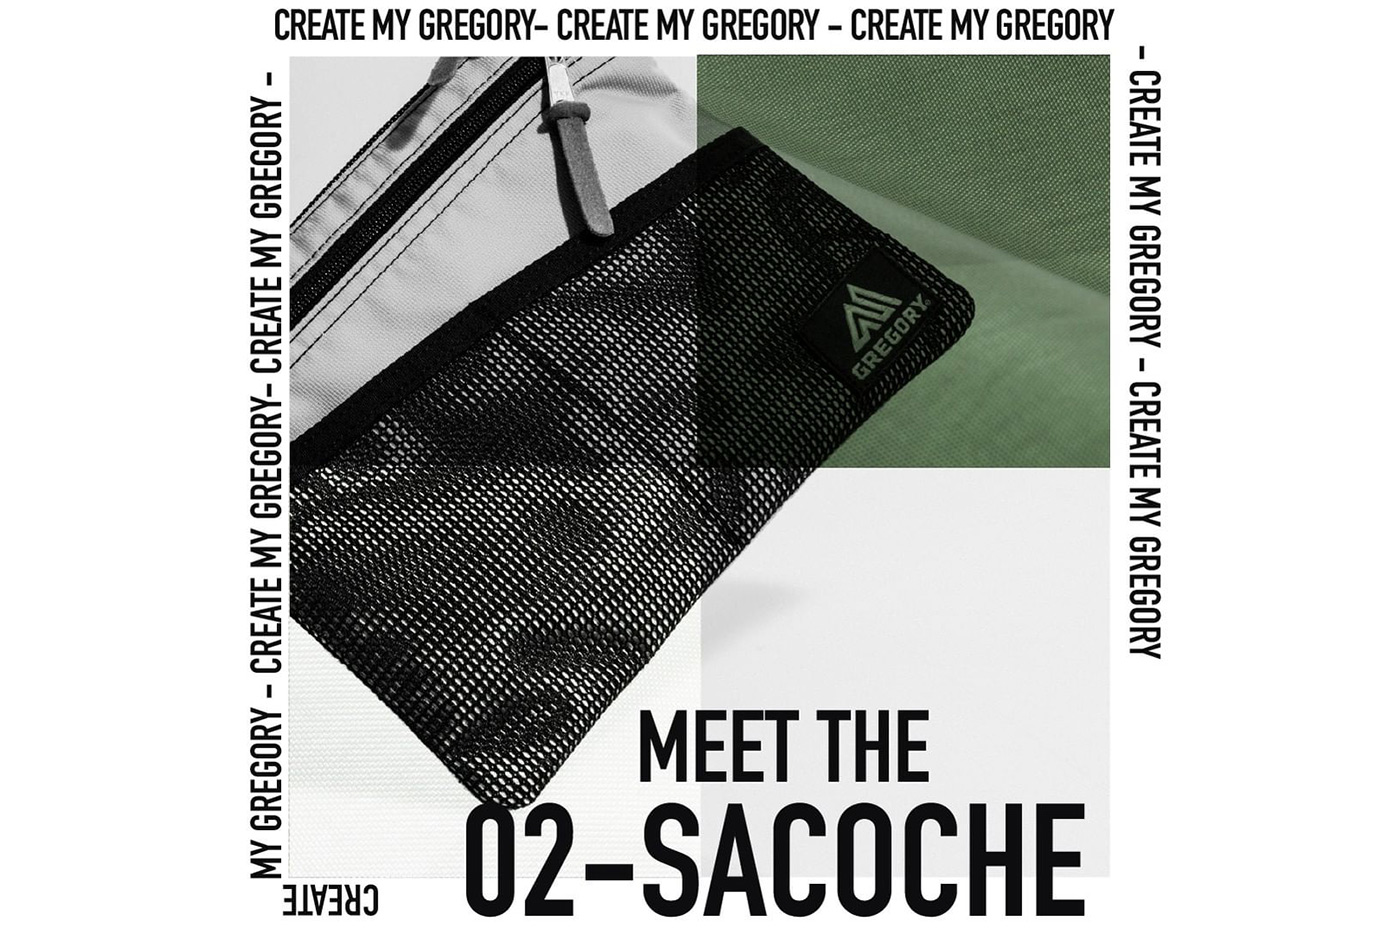 gregory-bag-customize-02